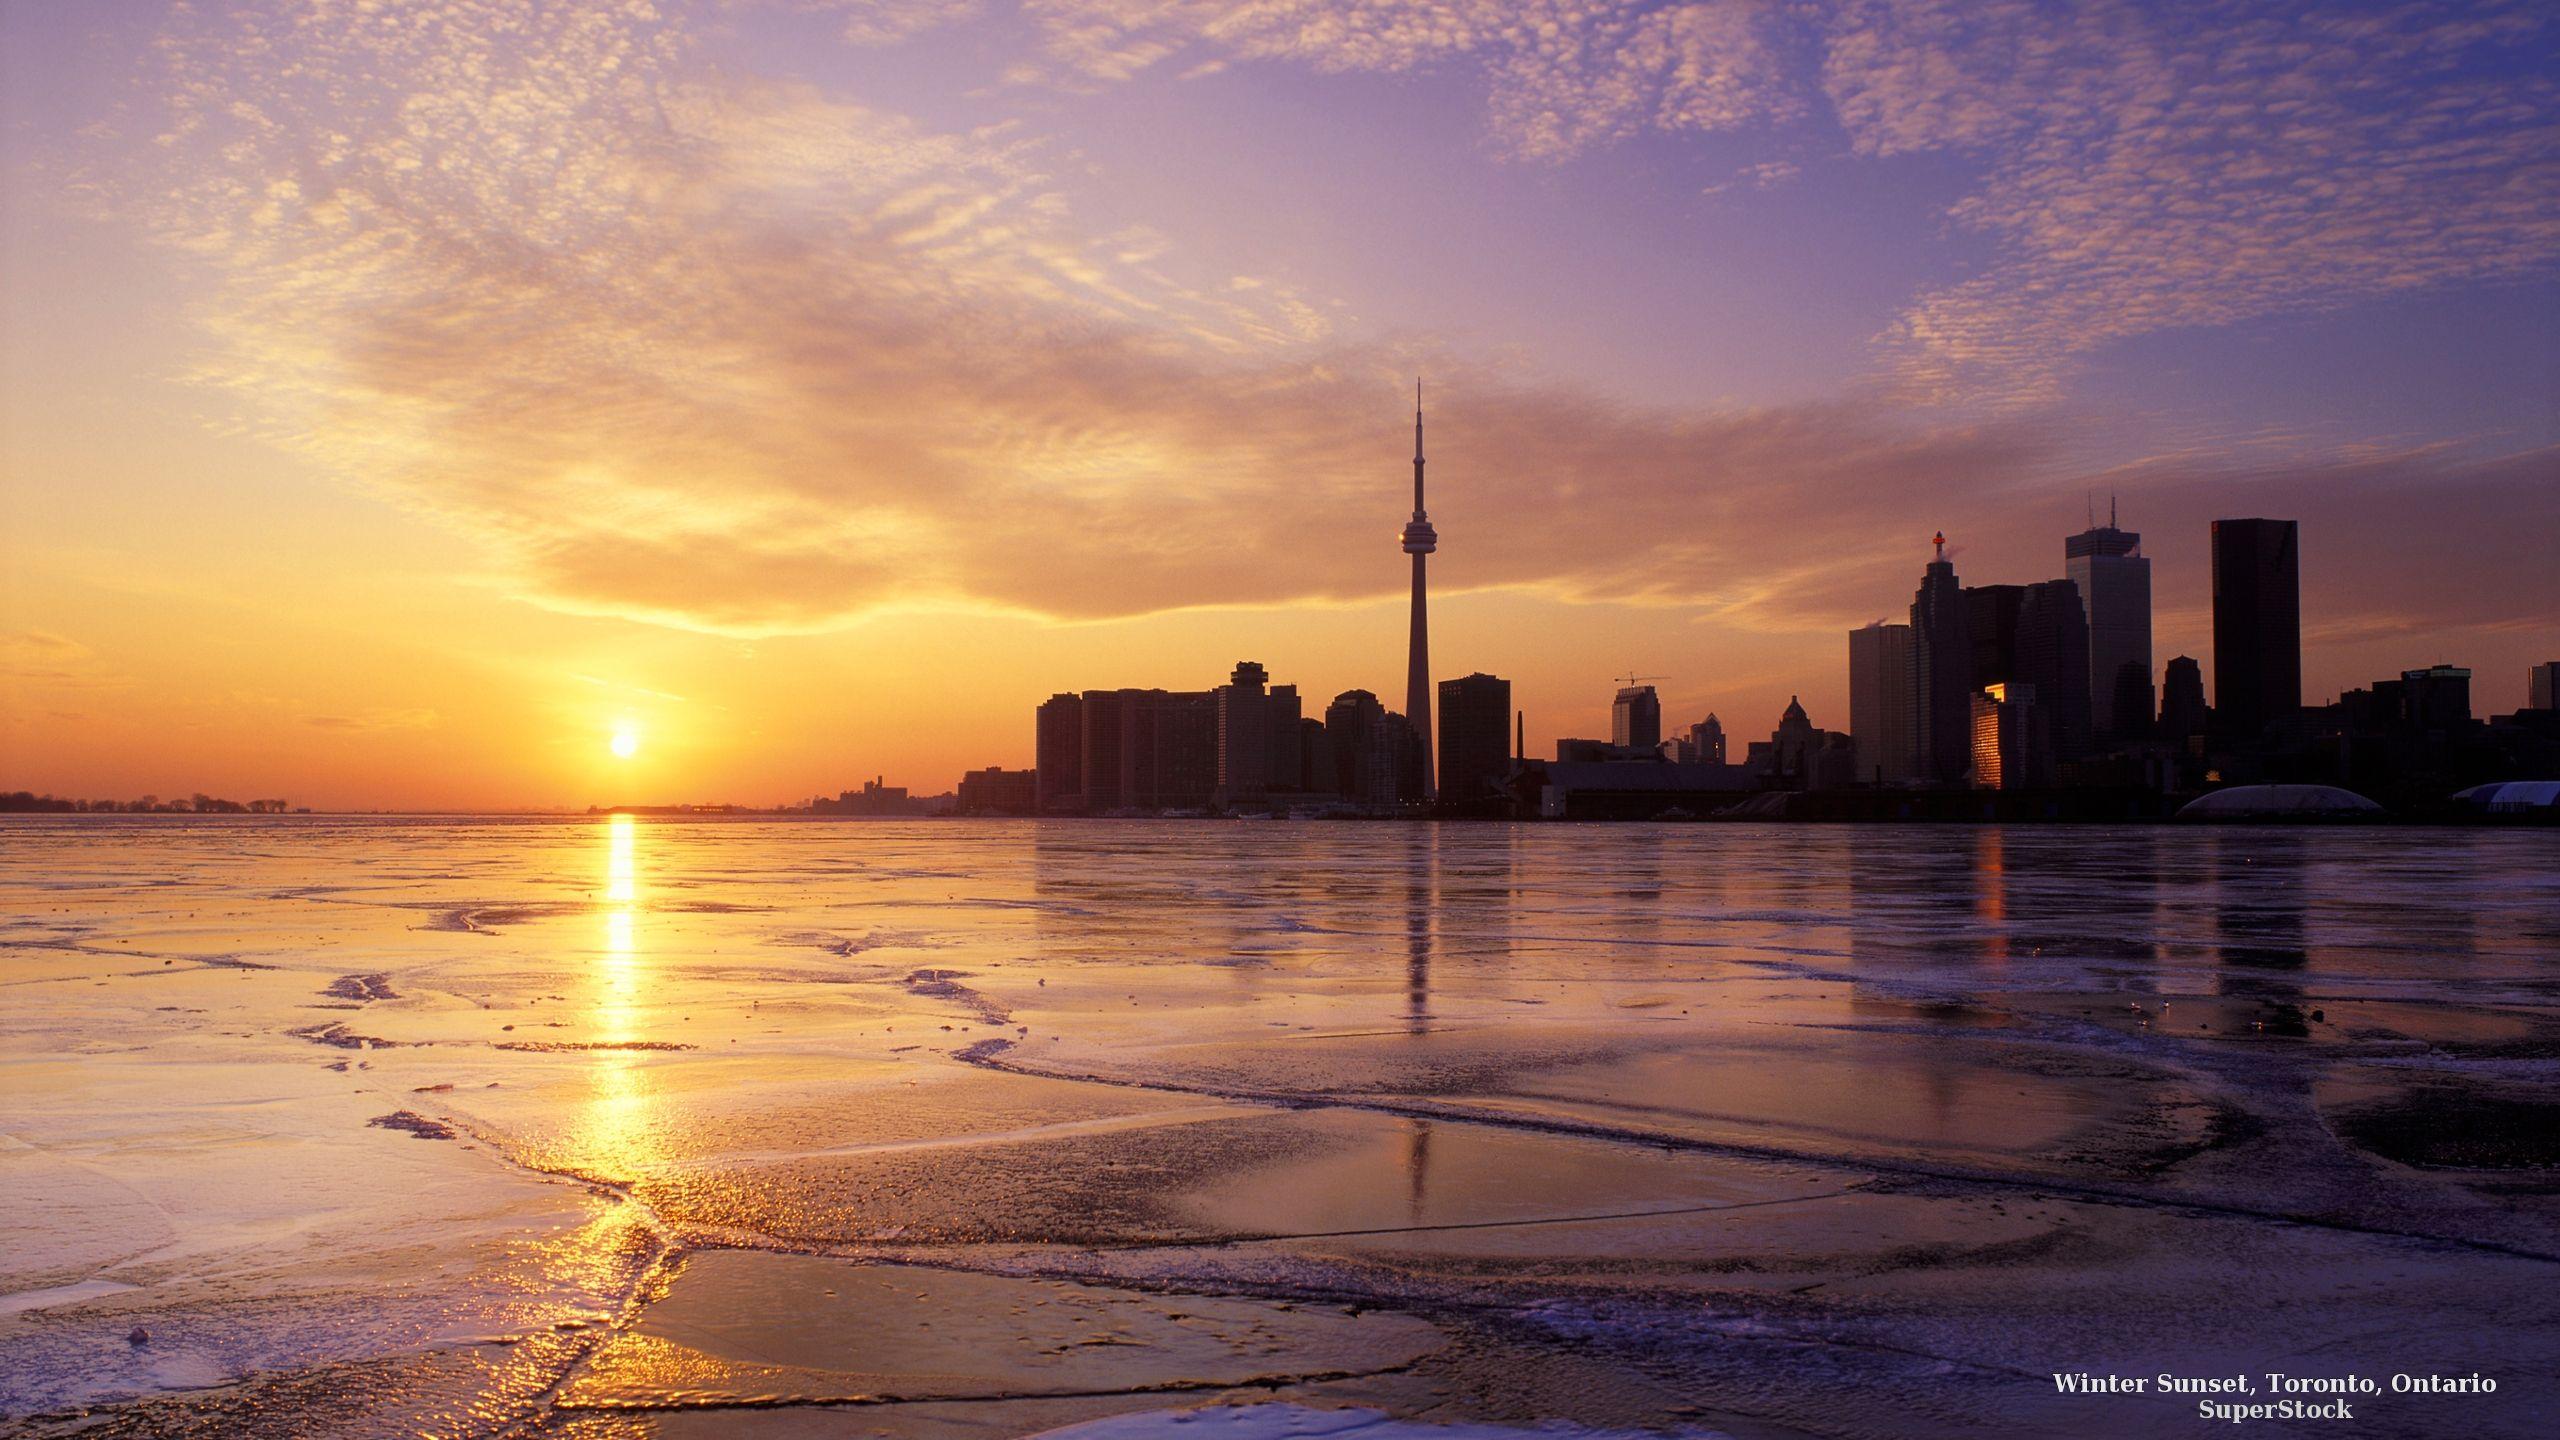 Winter Sunset, Toronto, Ontario. Winter sunset, Sunset